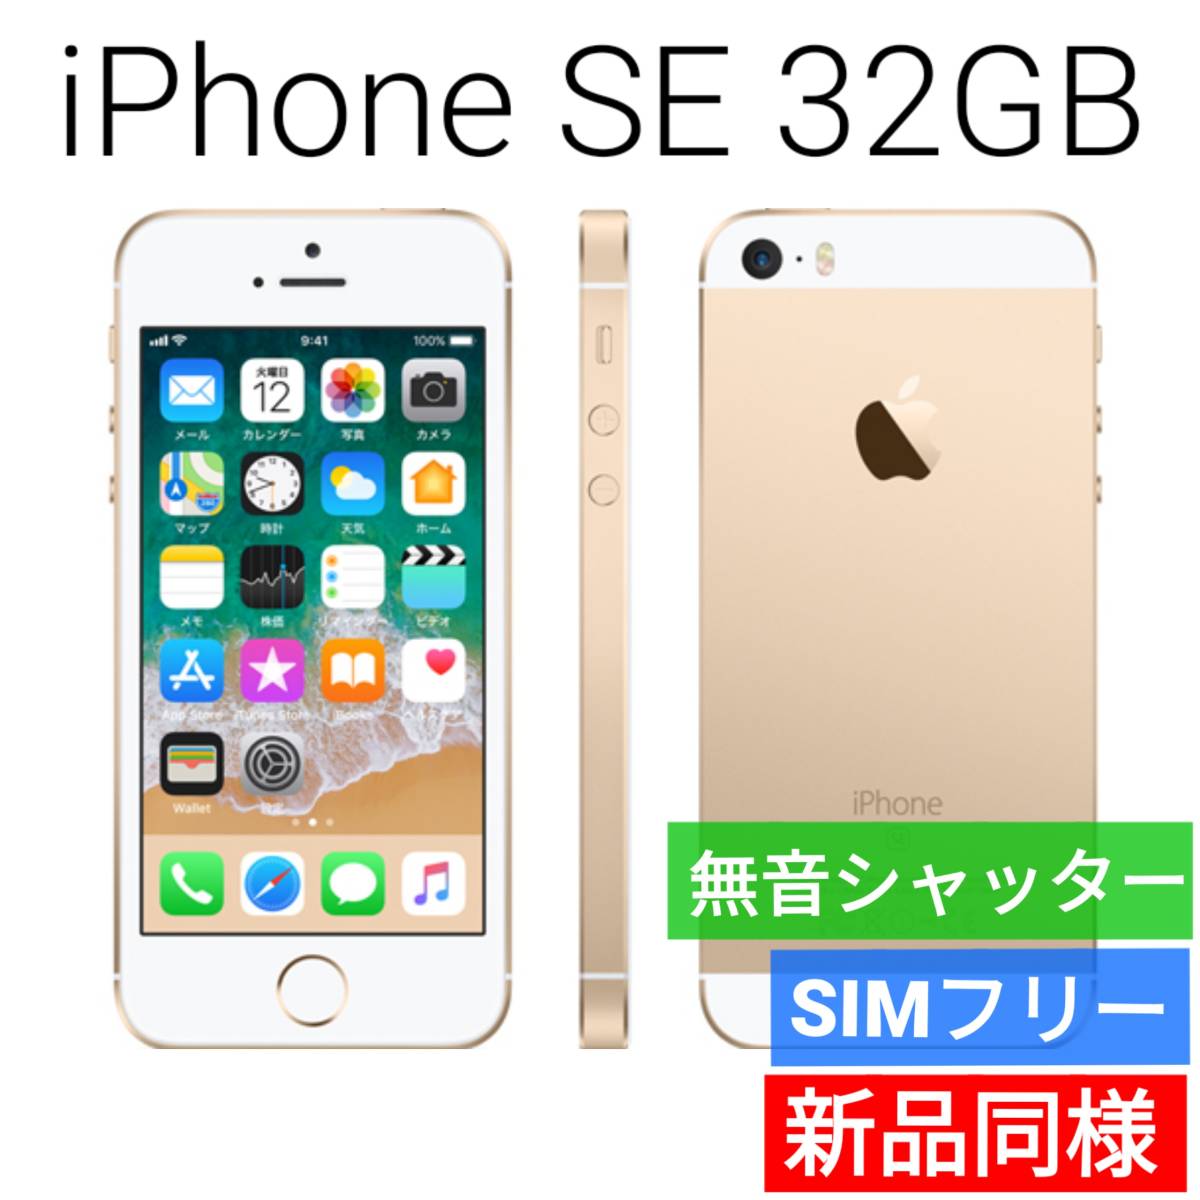 新品同等 iPhone SE A1723 32GB ゴールド 海外版 SIMフリー シャッター音なし 送料無料 国内発送 IMEI 356606080544541